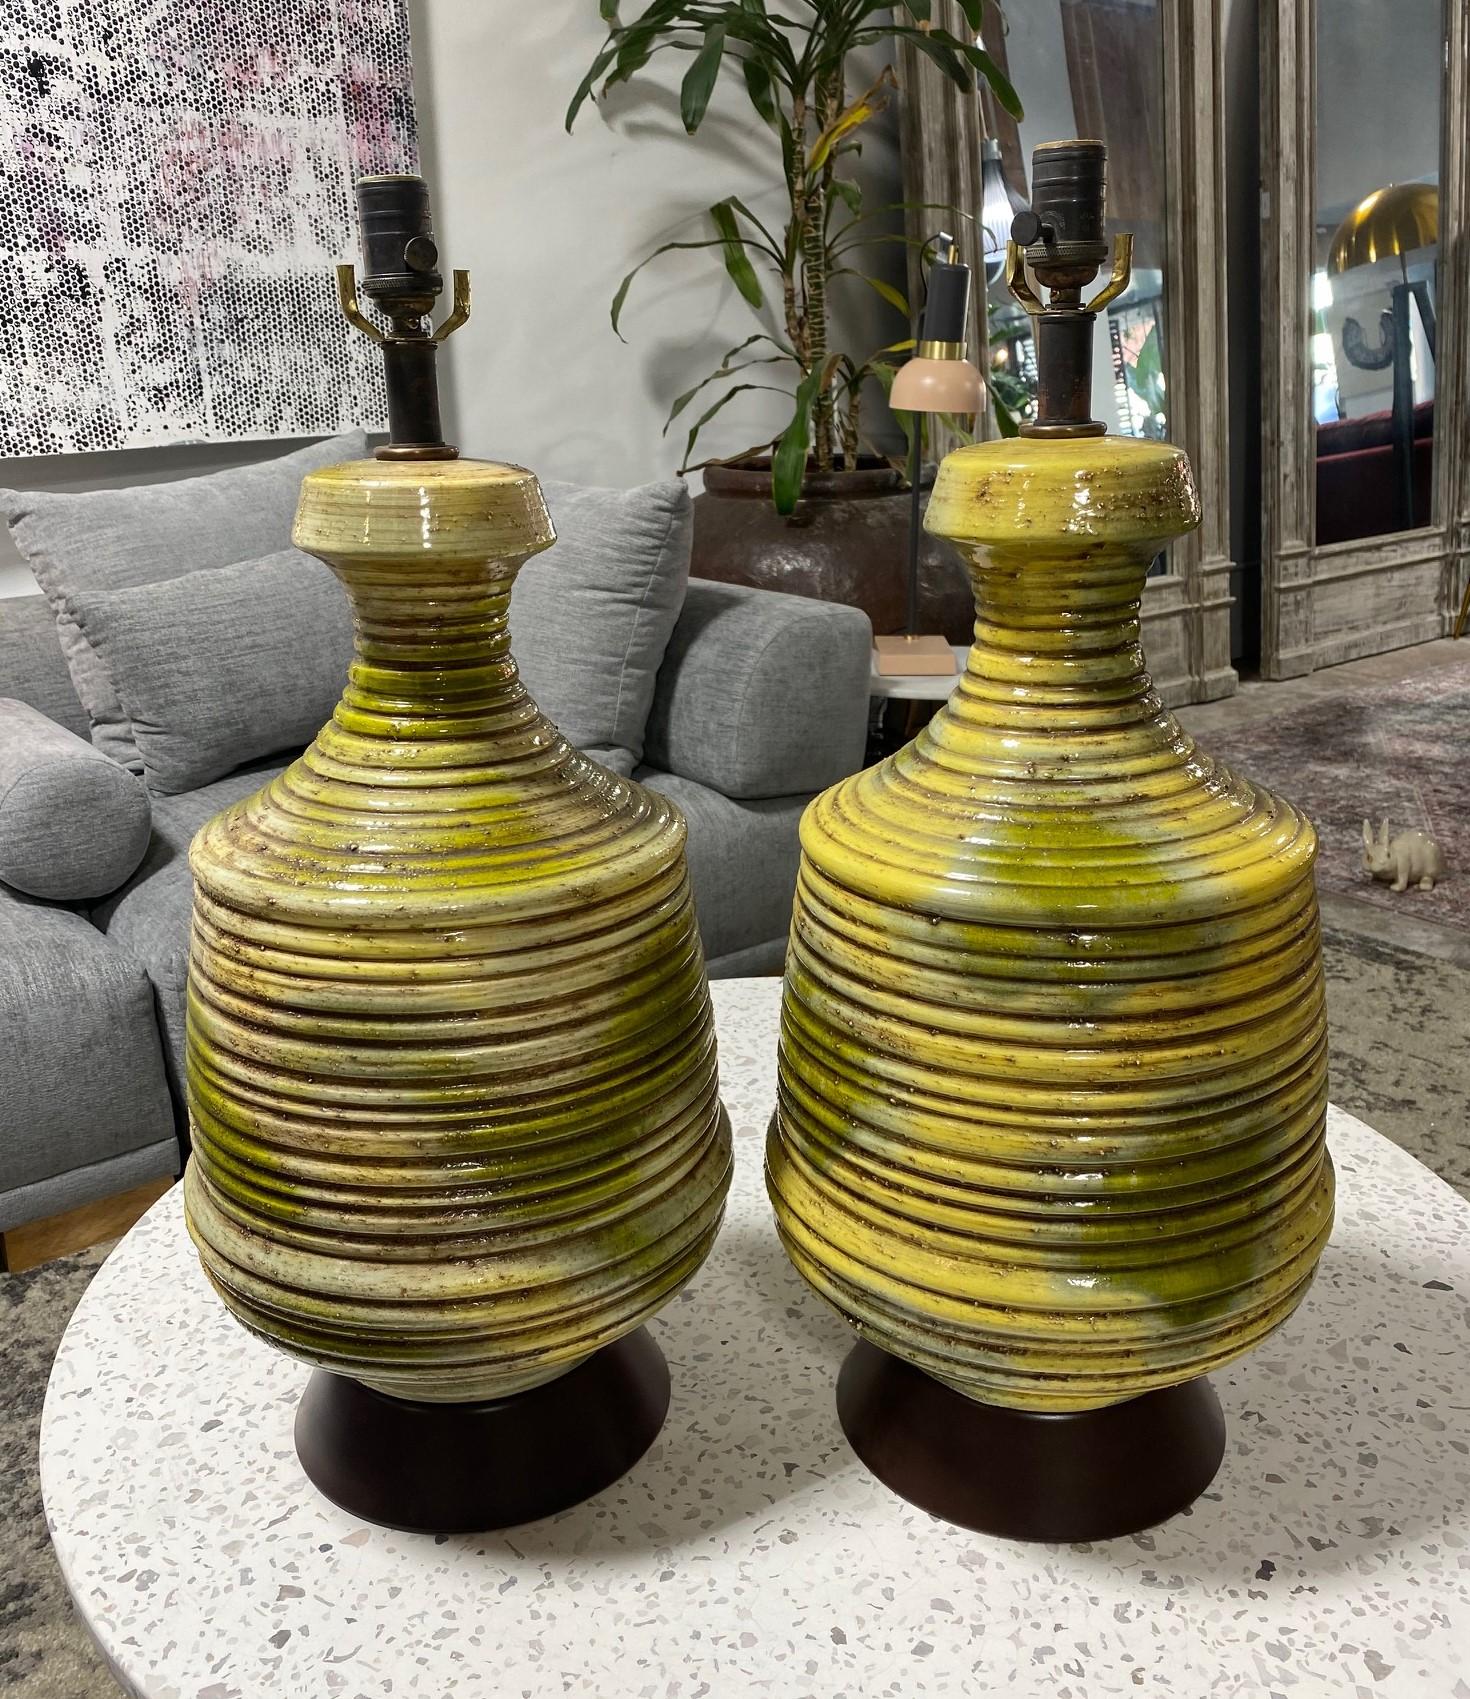 Une paire de fabuleuses lampes de table en céramique nervurée verte et jaune, émaillée de lave, datant du milieu du siècle dernier. Tout à fait fantastique, magnifiquement coloré et conçu. Il nous a tout de suite tapé dans l'œil. Les lampes sont